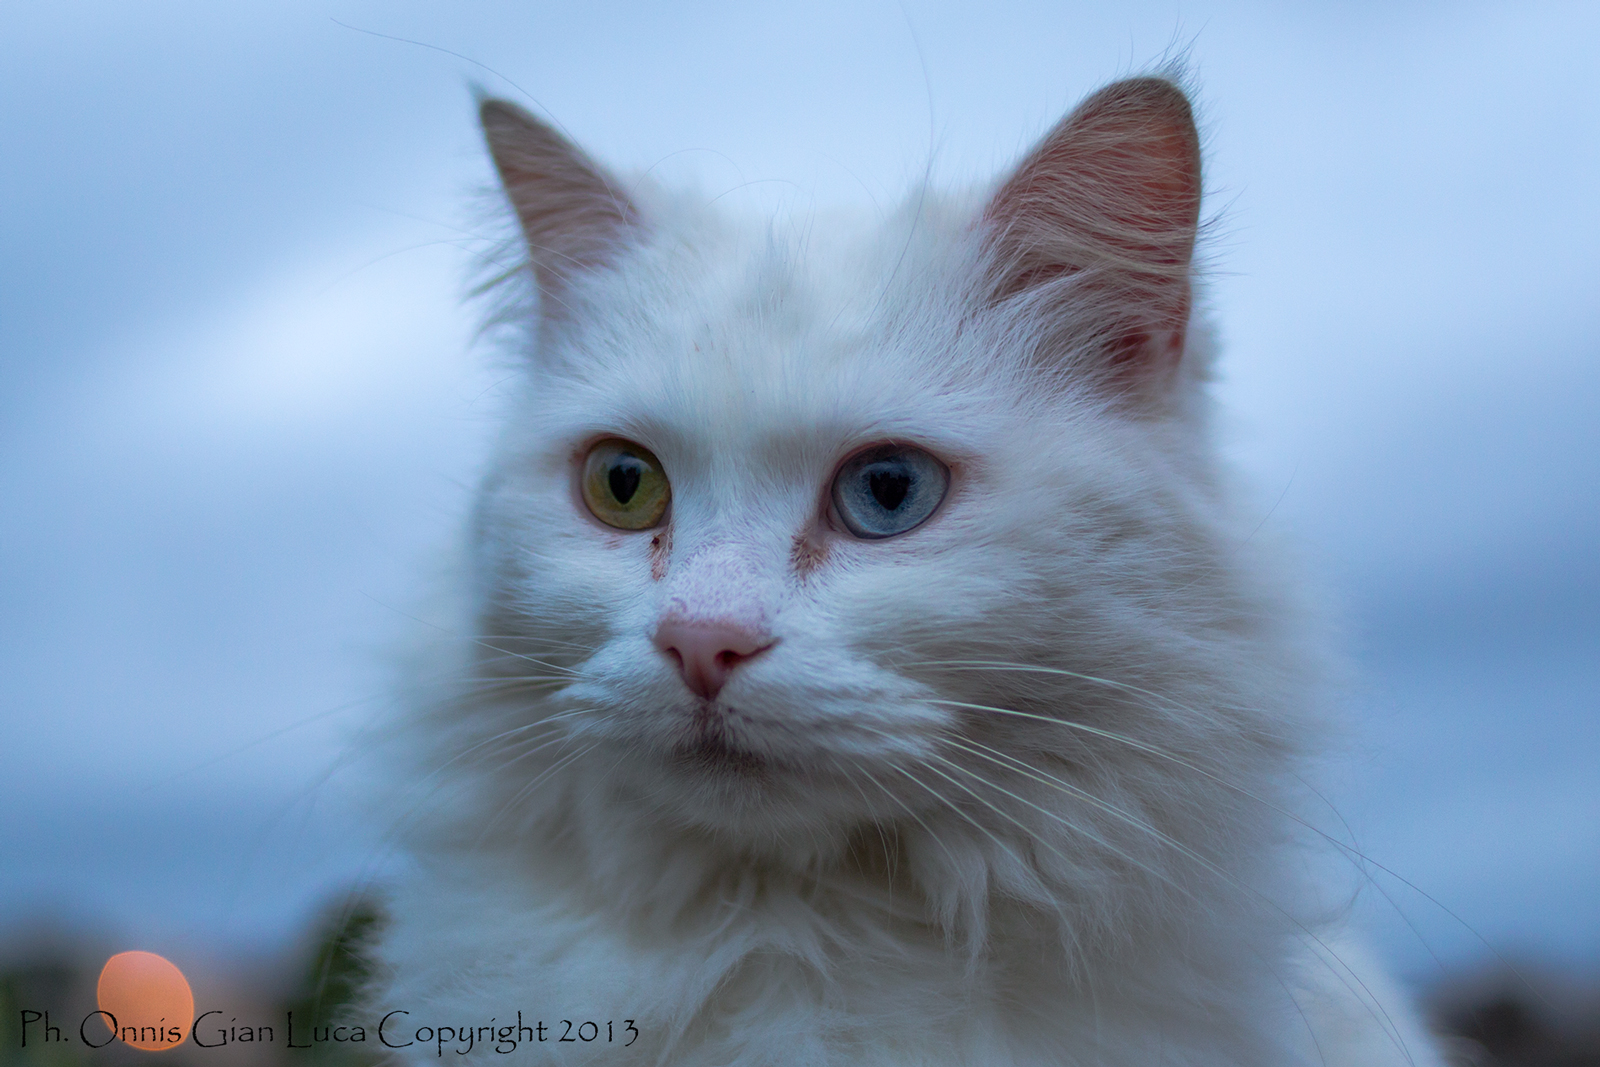 Cat with heterochromia...